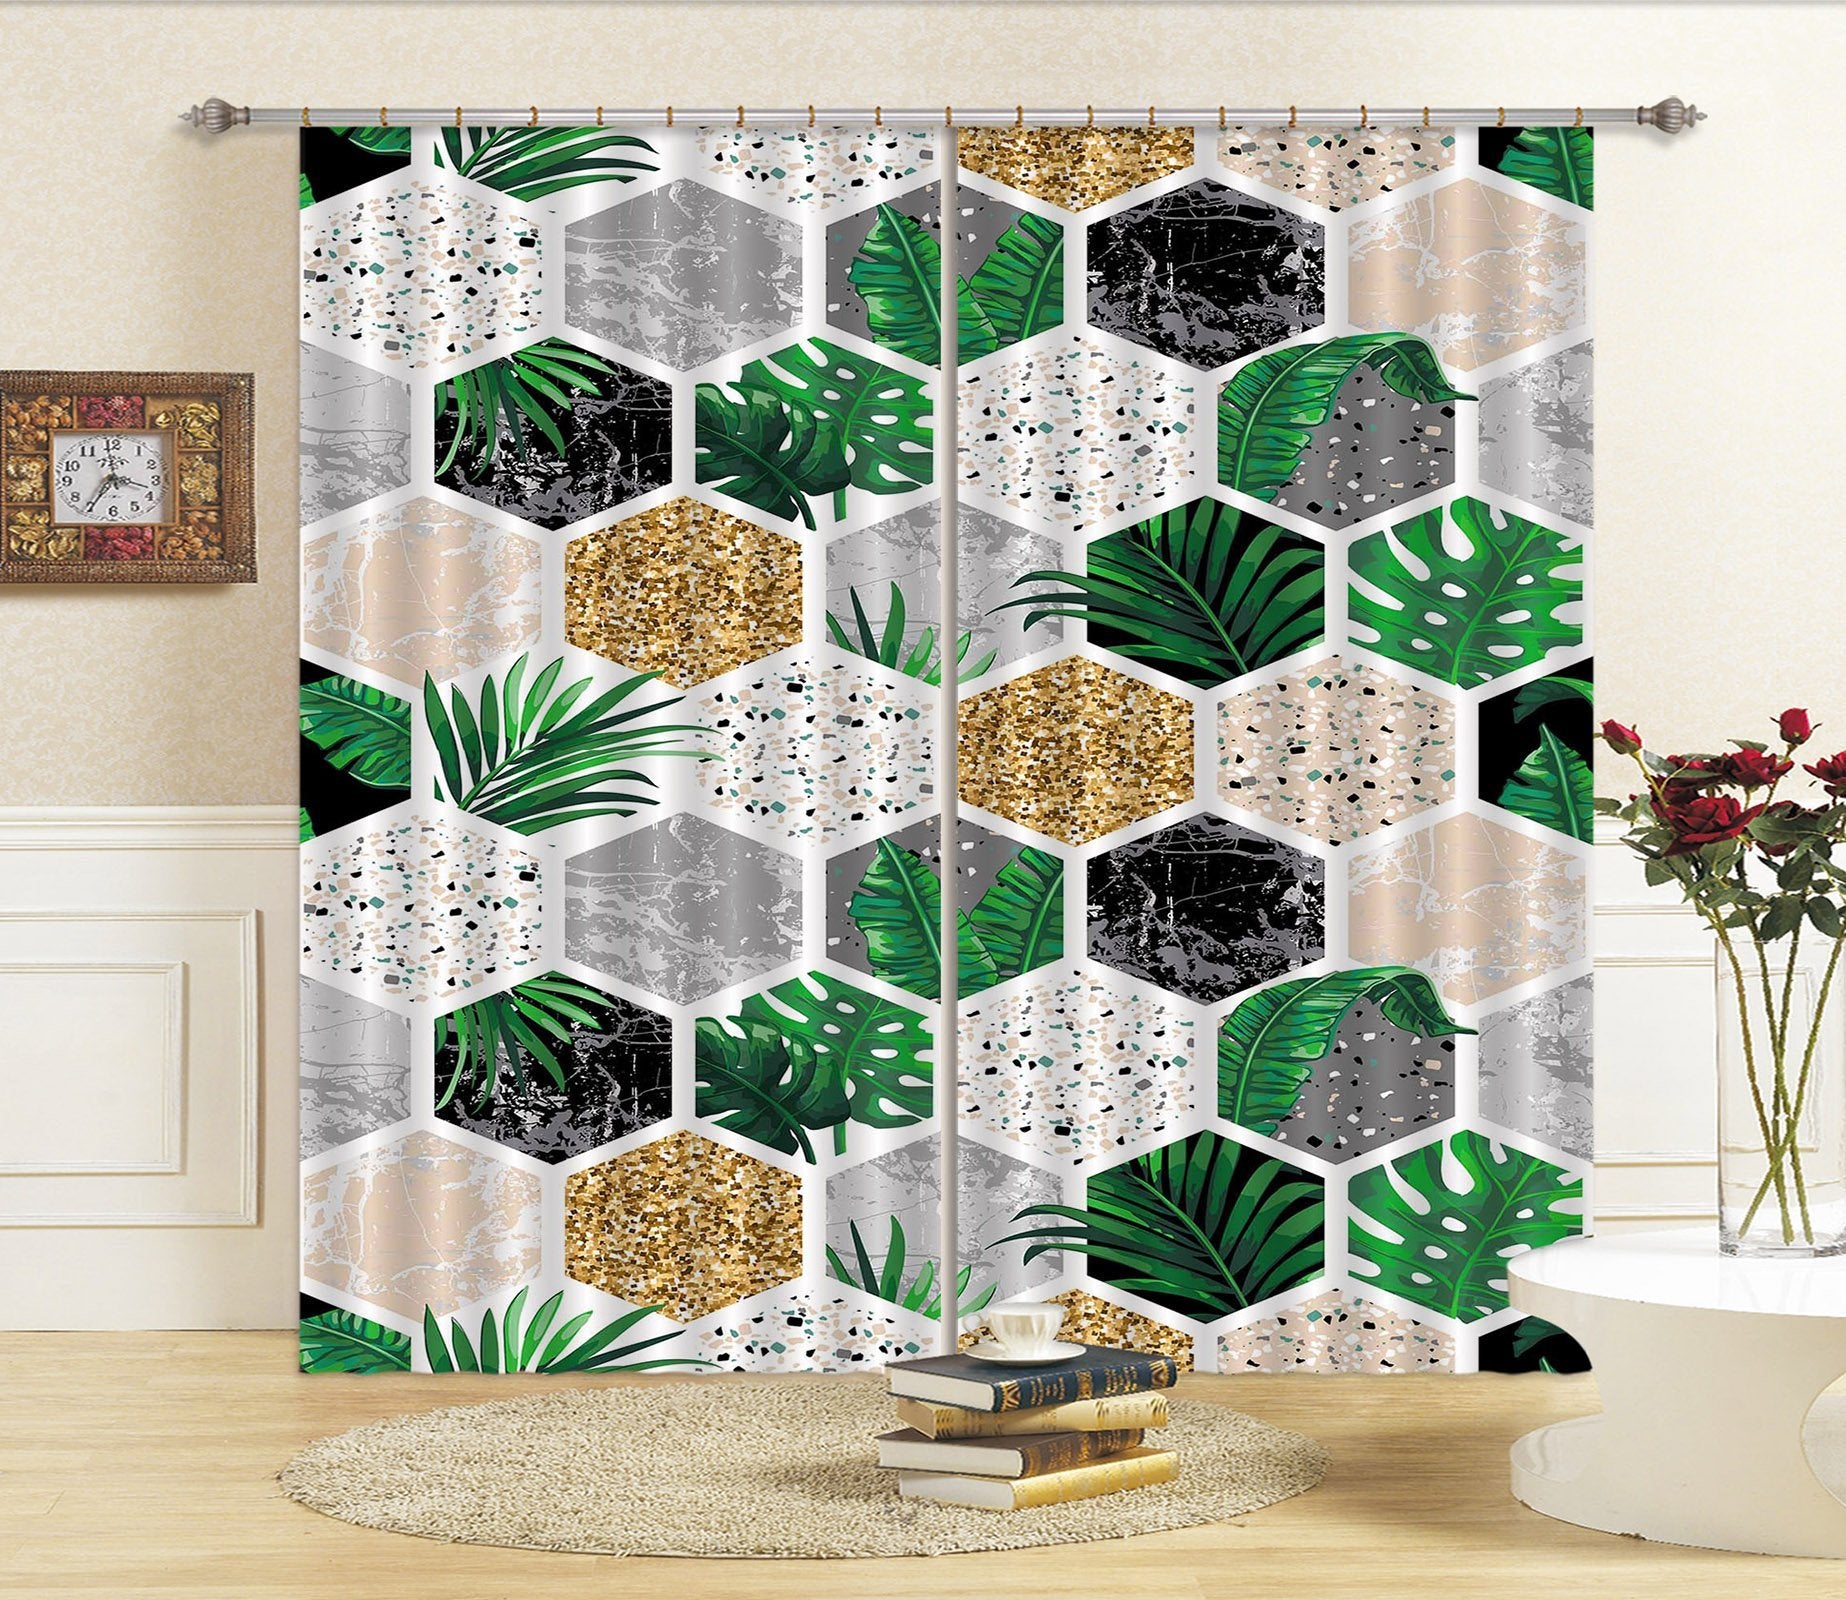 3D Hexagonal Plant Pattern 75 Curtains Drapes Curtains AJ Creativity Home 